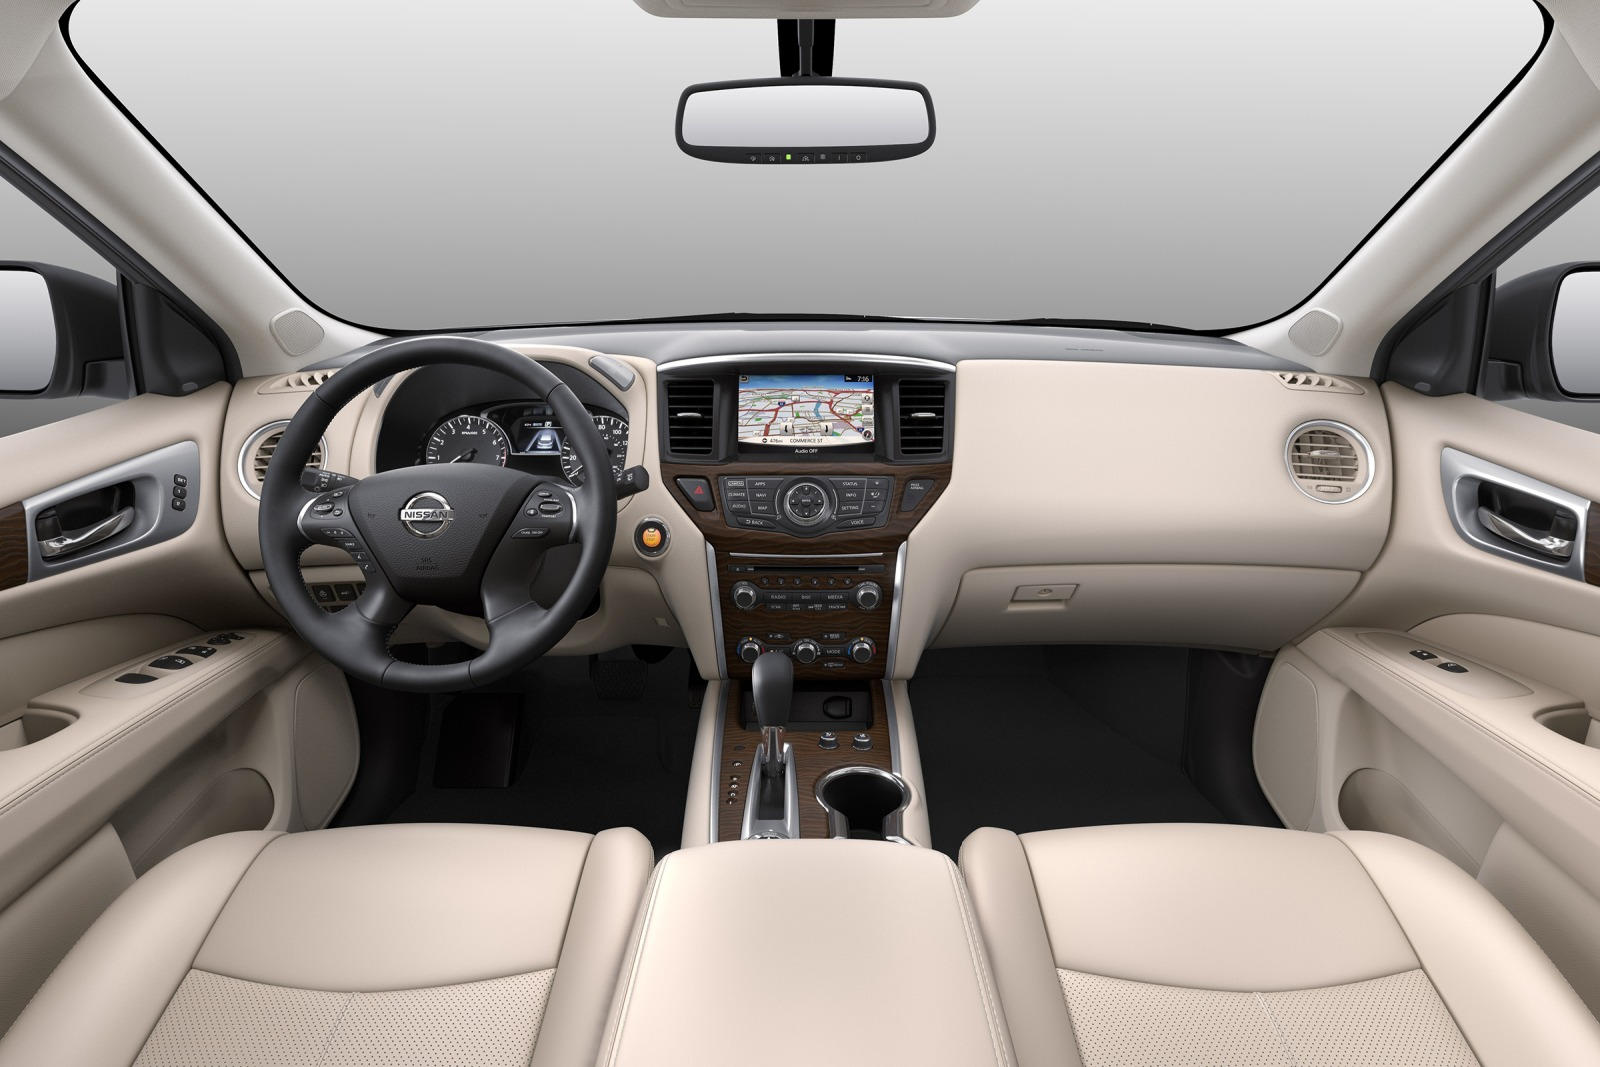 2019 Nissan Pathfinder Dashboard